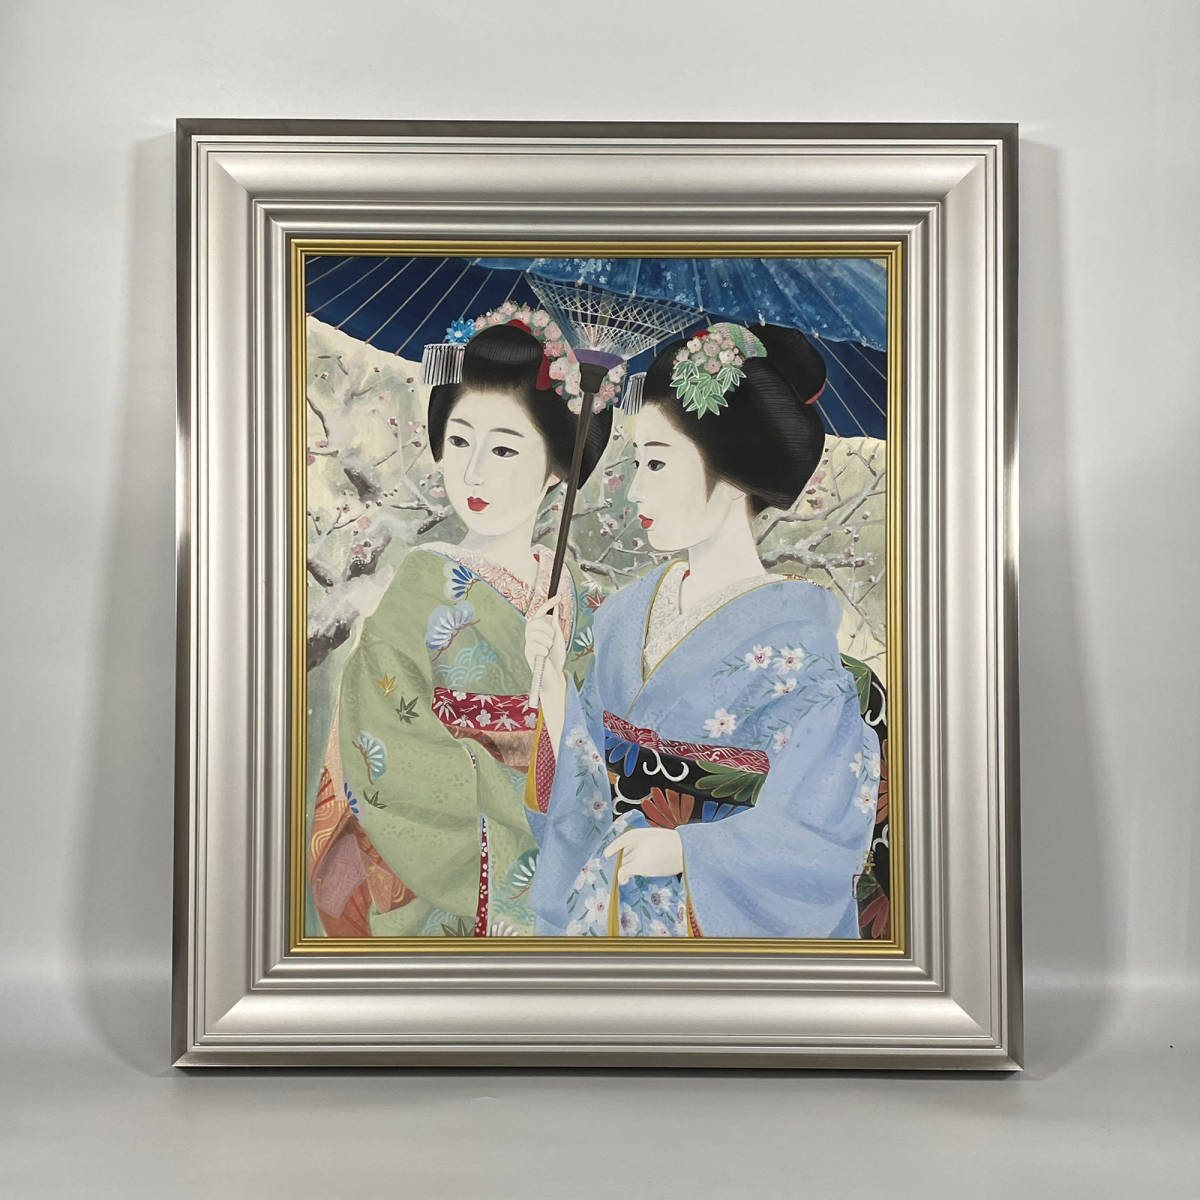 [प्रामाणिक] ■ जून नाकाओ ■ अवायुकी जापानी पेंटिंग/10 आकार मुहर के साथ/प्रामाणिक गारंटी 230921004, चित्रकारी, जापानी चित्रकला, व्यक्ति, बोधिसत्त्व